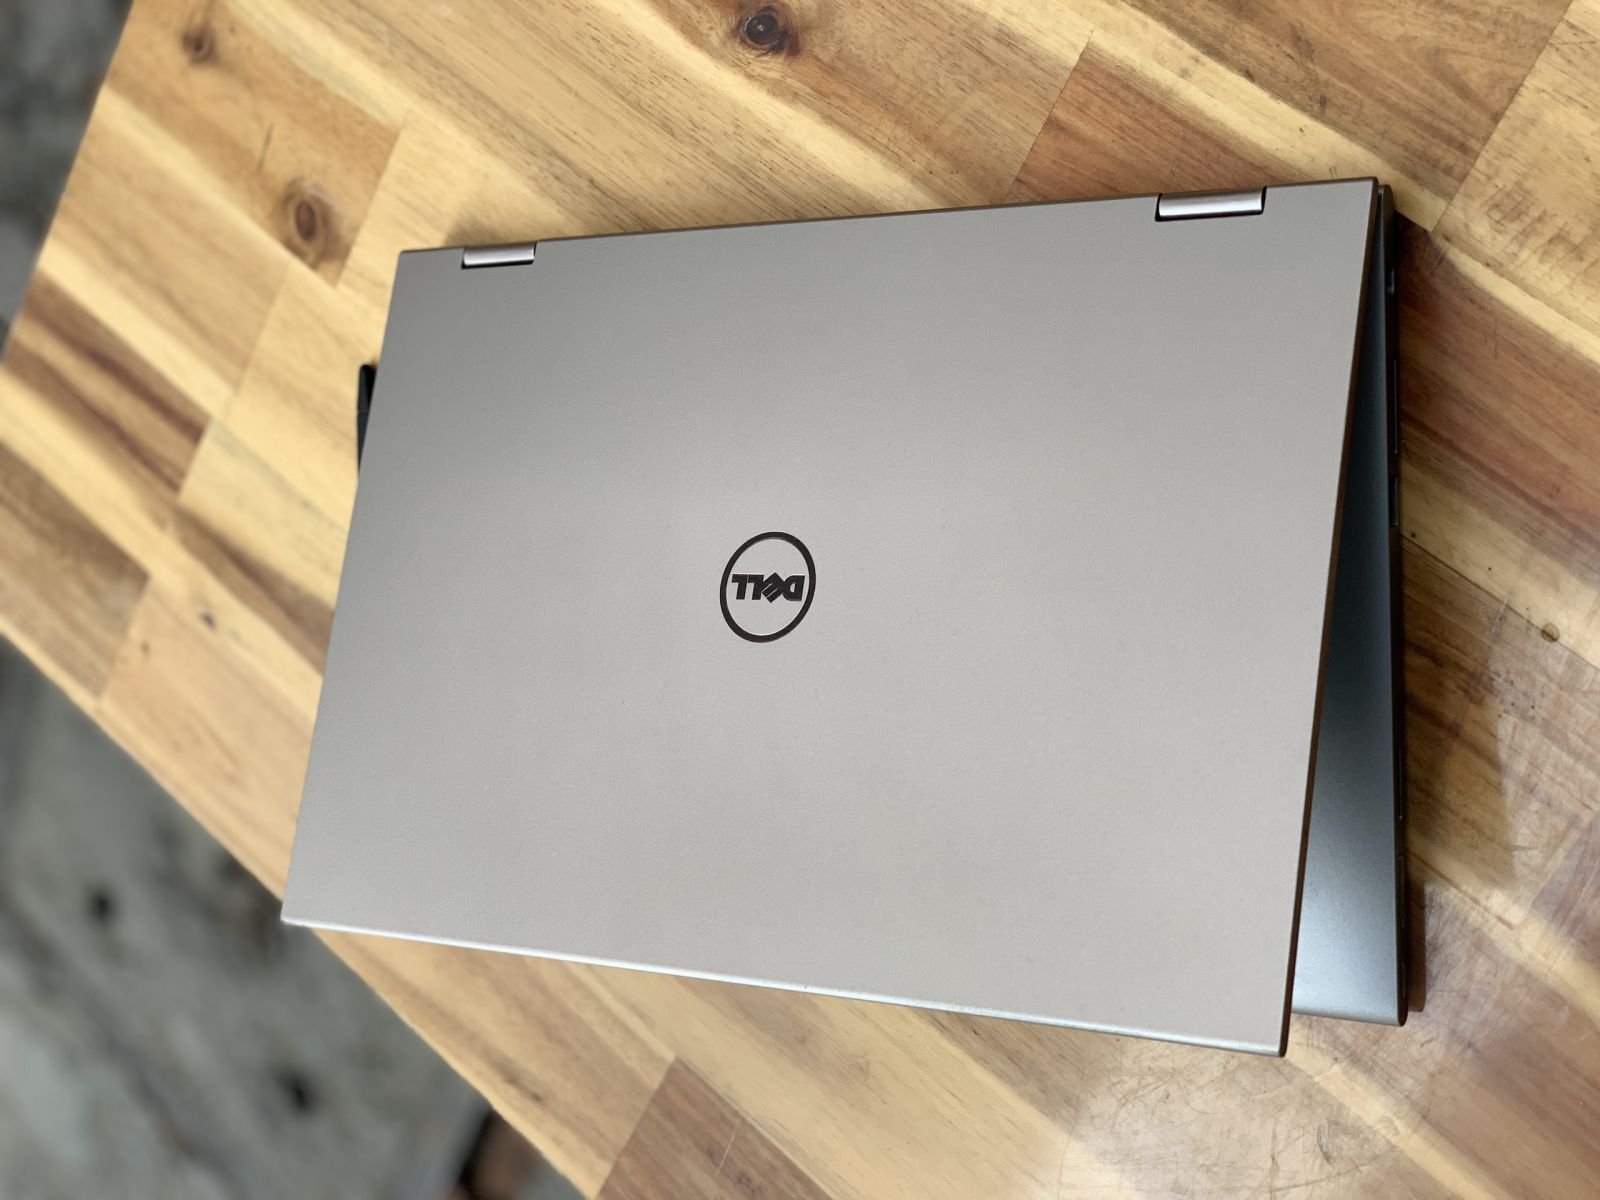 Laptop Dell Inspiron 7359, i3 6100U 4G SSD180G Toud xoay 360 độ có bút zin theo máy2